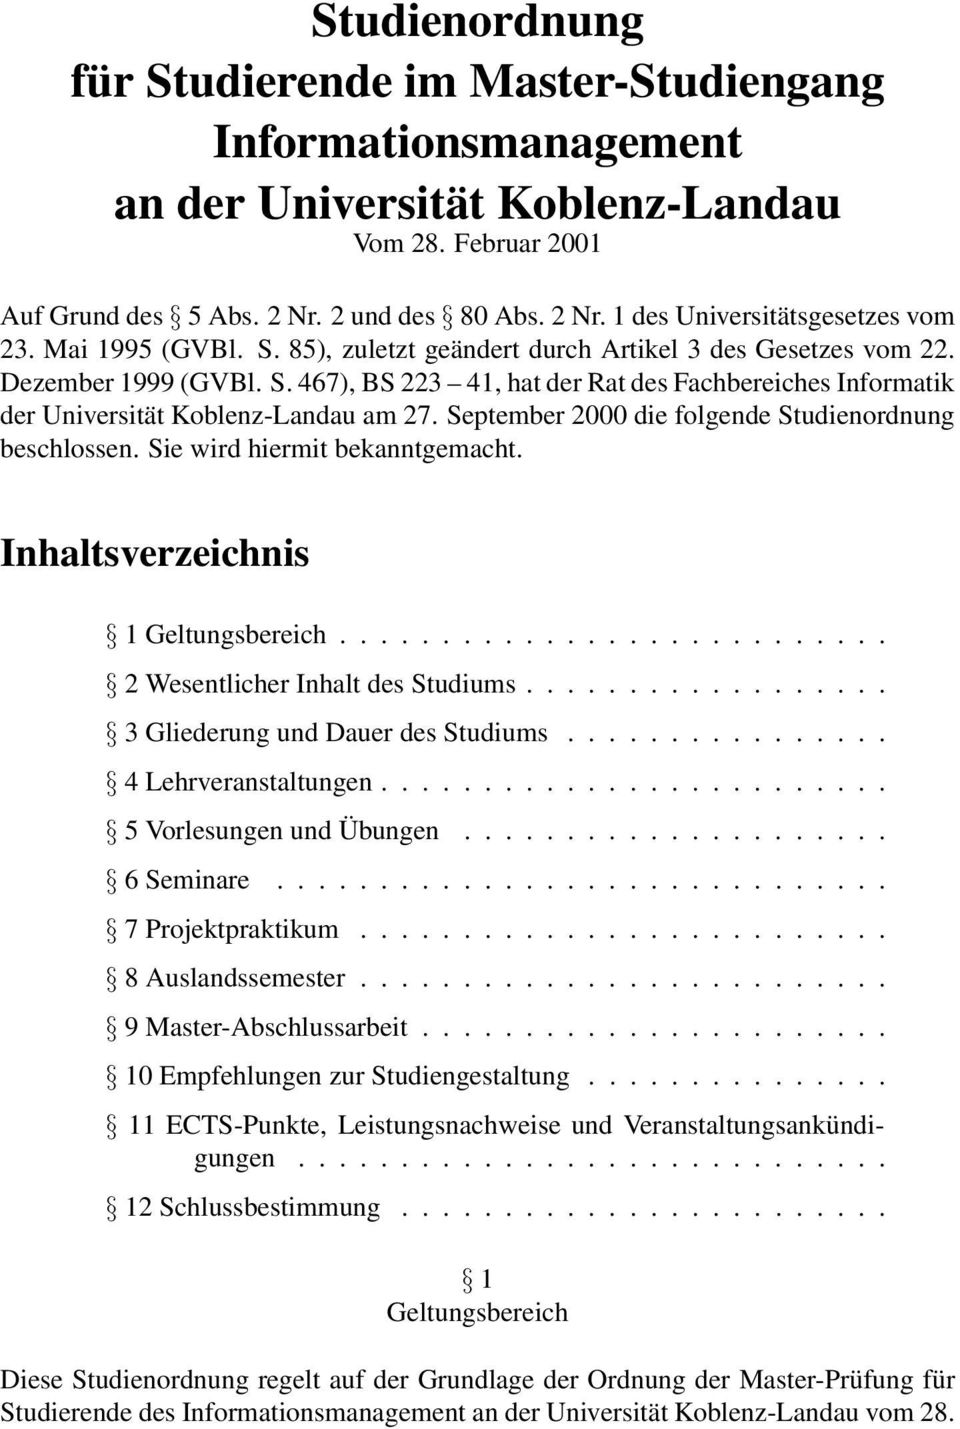 September 2000 die folgende Studienordnung beschlossen. Sie wird hiermit bekanntgemacht. Inhaltsverzeichnis 1Geltungsbereich... 2WesentlicherInhaltdesStudiums... 3GliederungundDauerdesStudiums.